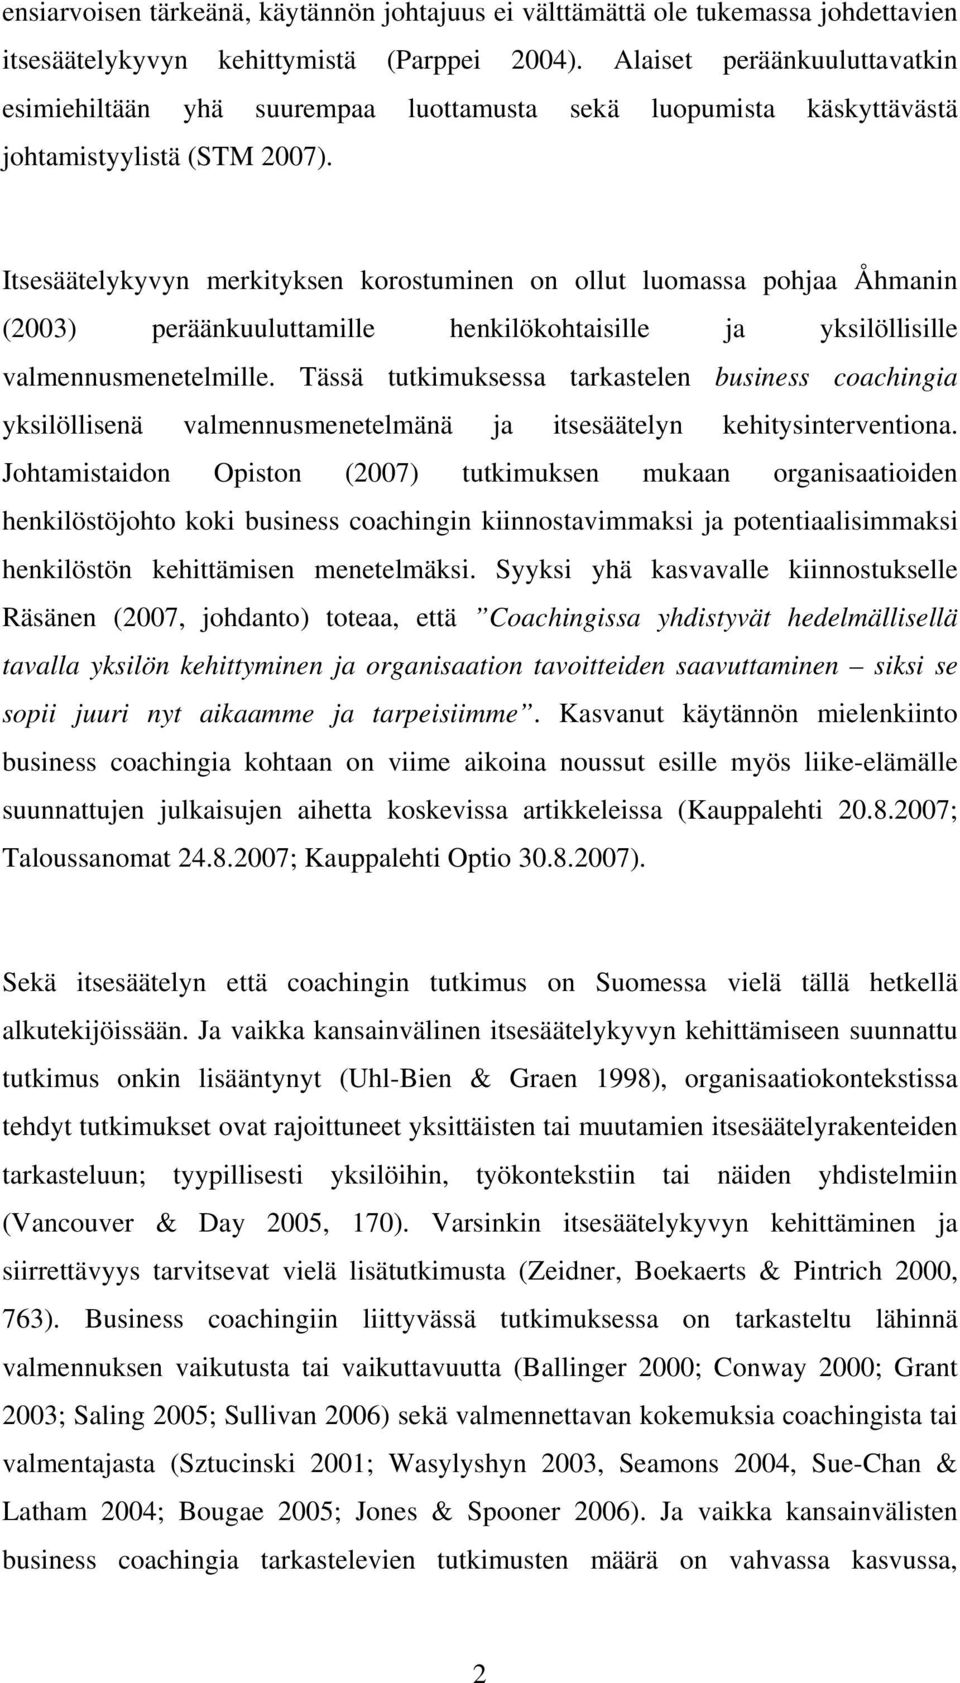 Itsesäätelykyvyn merkityksen krstuminen n llut lumassa phjaa Åhmanin (2003) peräänkuuluttamille henkilökhtaisille ja yksilöllisille valmennusmenetelmille.